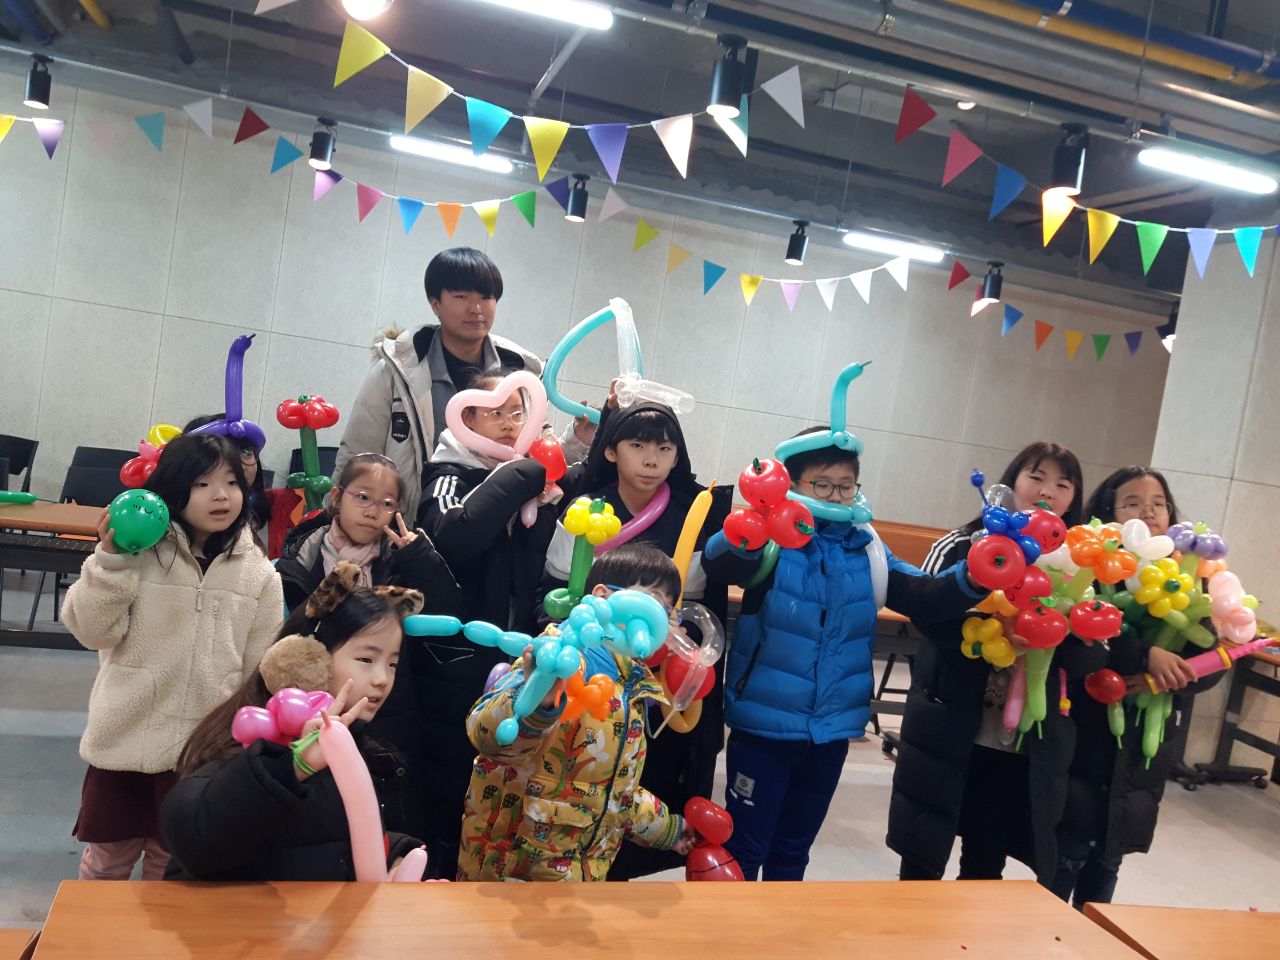 중곡3동 자치회관 겨울방학 권역별 특화프로그램 어린이와 함께하는 풍선아트